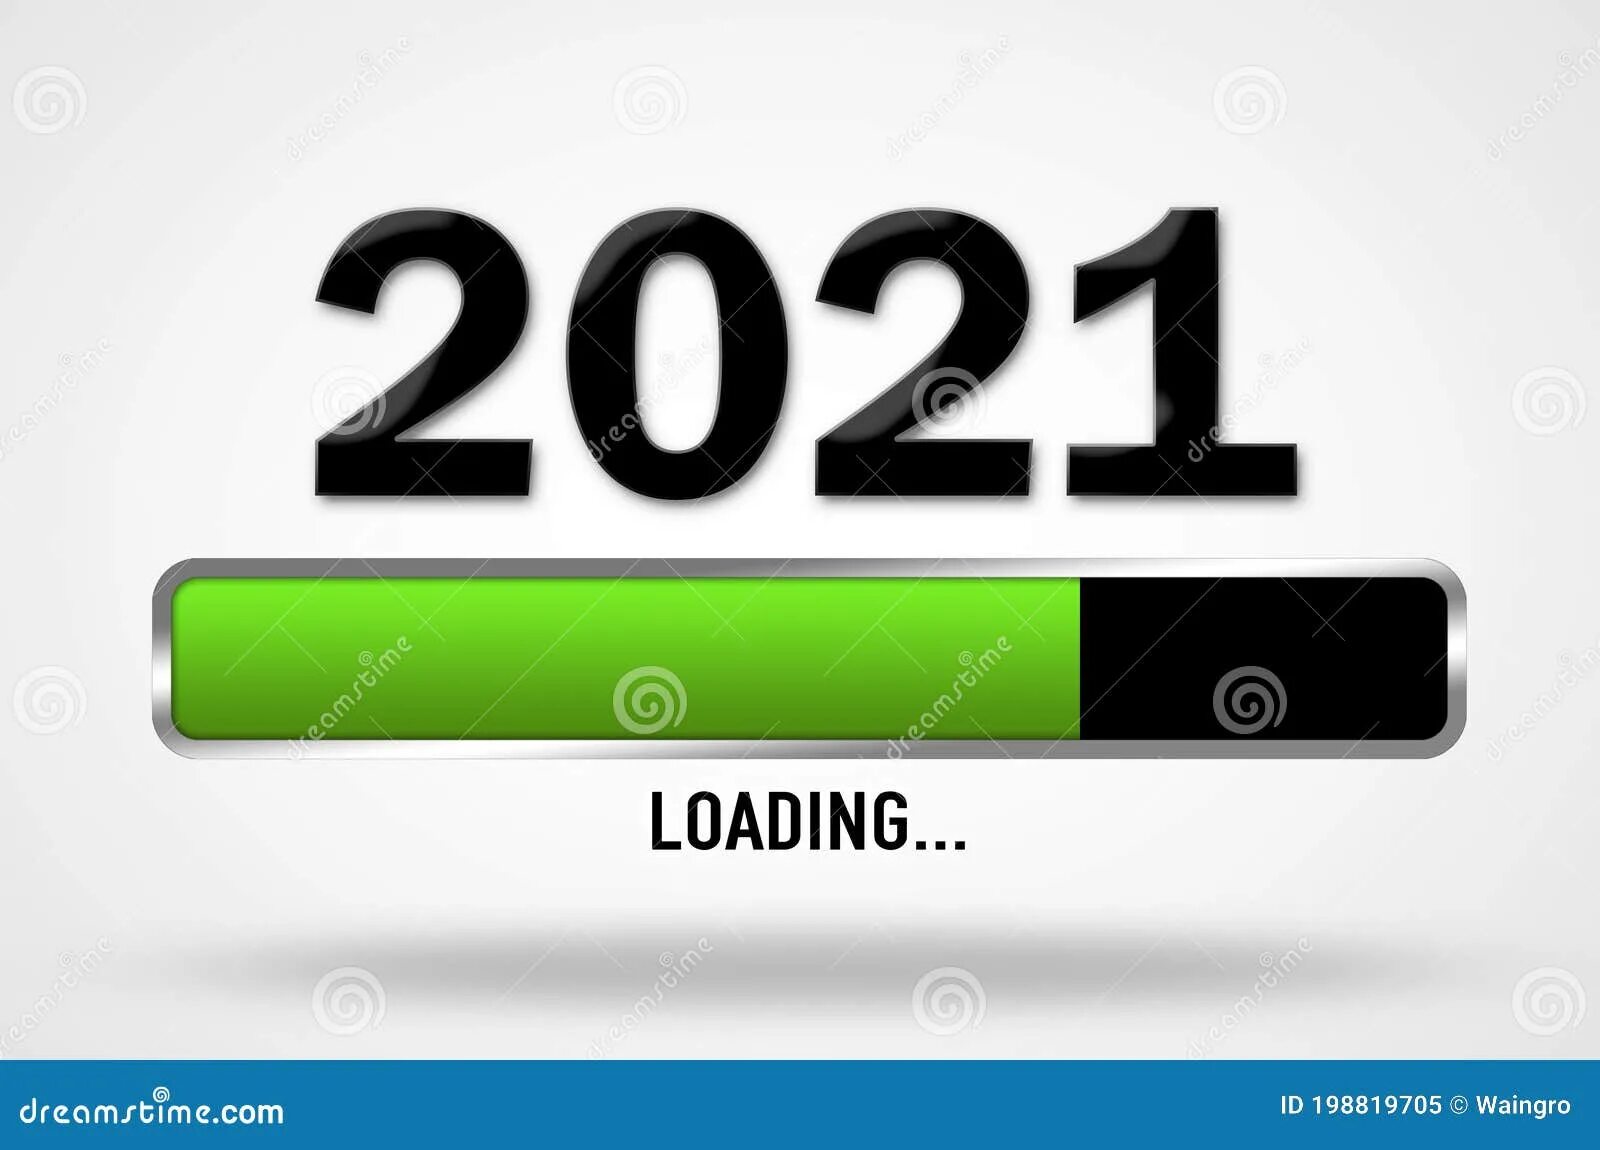 2021 Загрузка. Загрузка 25 процентов. Загрузка. Заканчивается 2021 год картинки. Loading 25